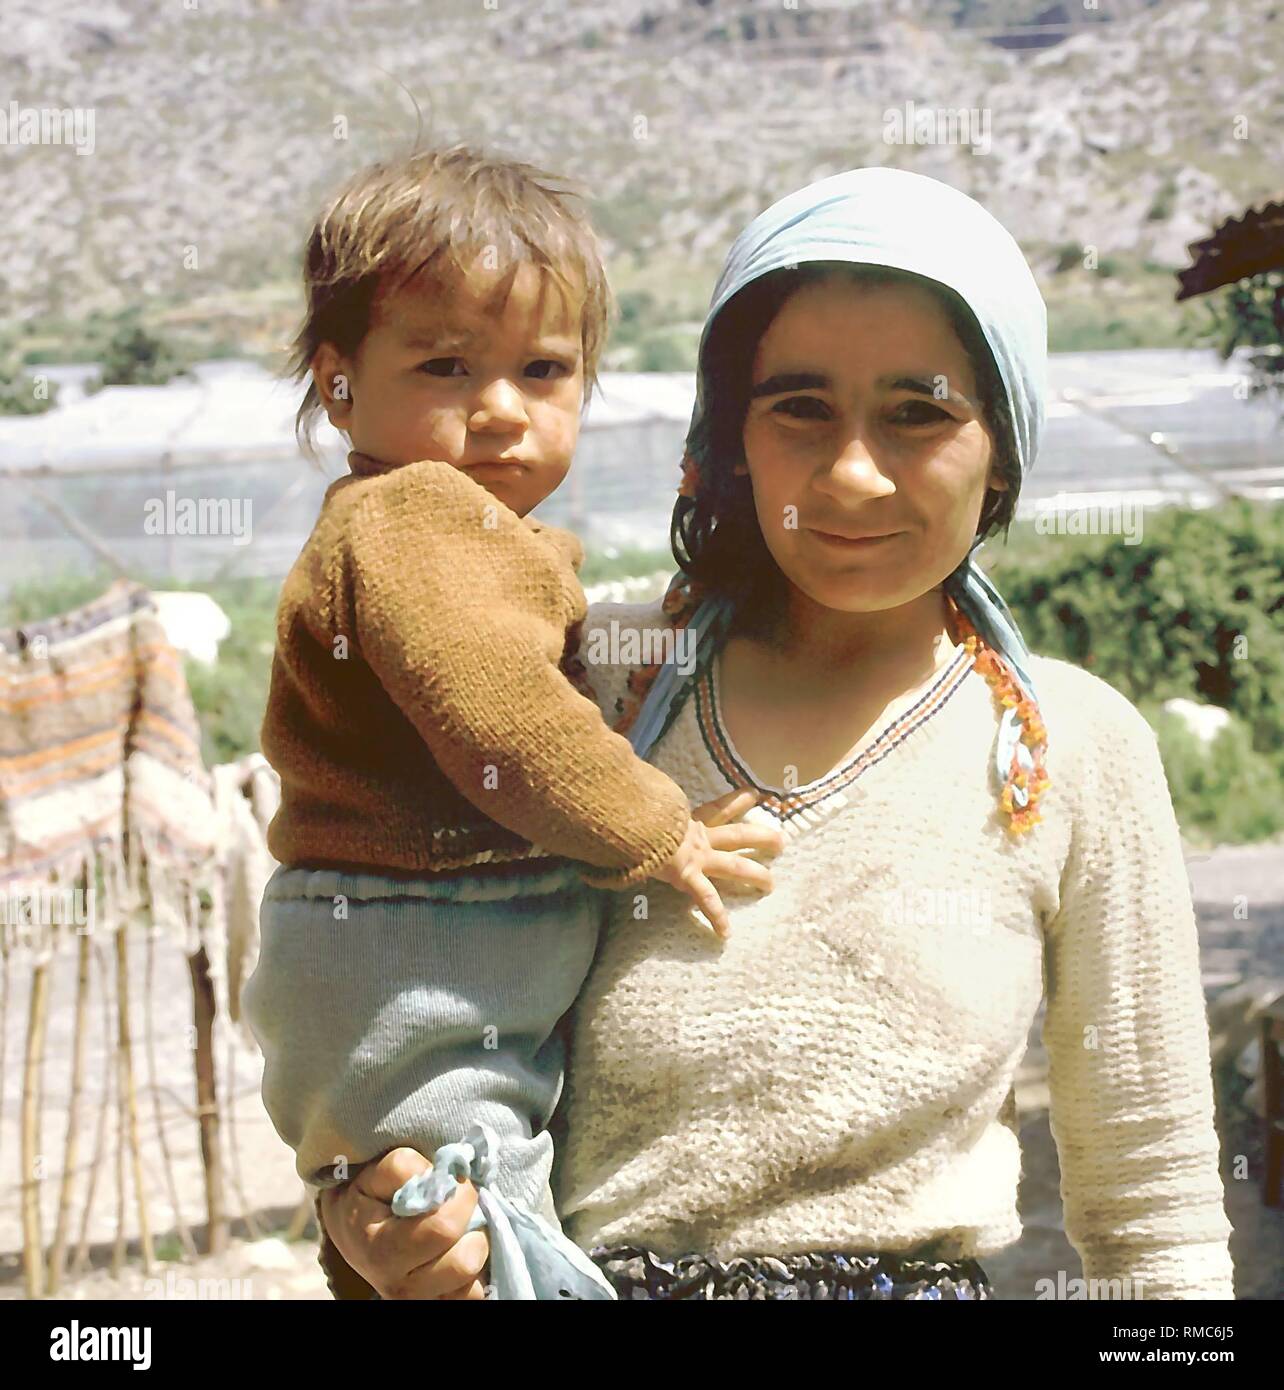 Eine junge türkische Frau mit ihrem kleinen Sohn in die Arme. Stockfoto